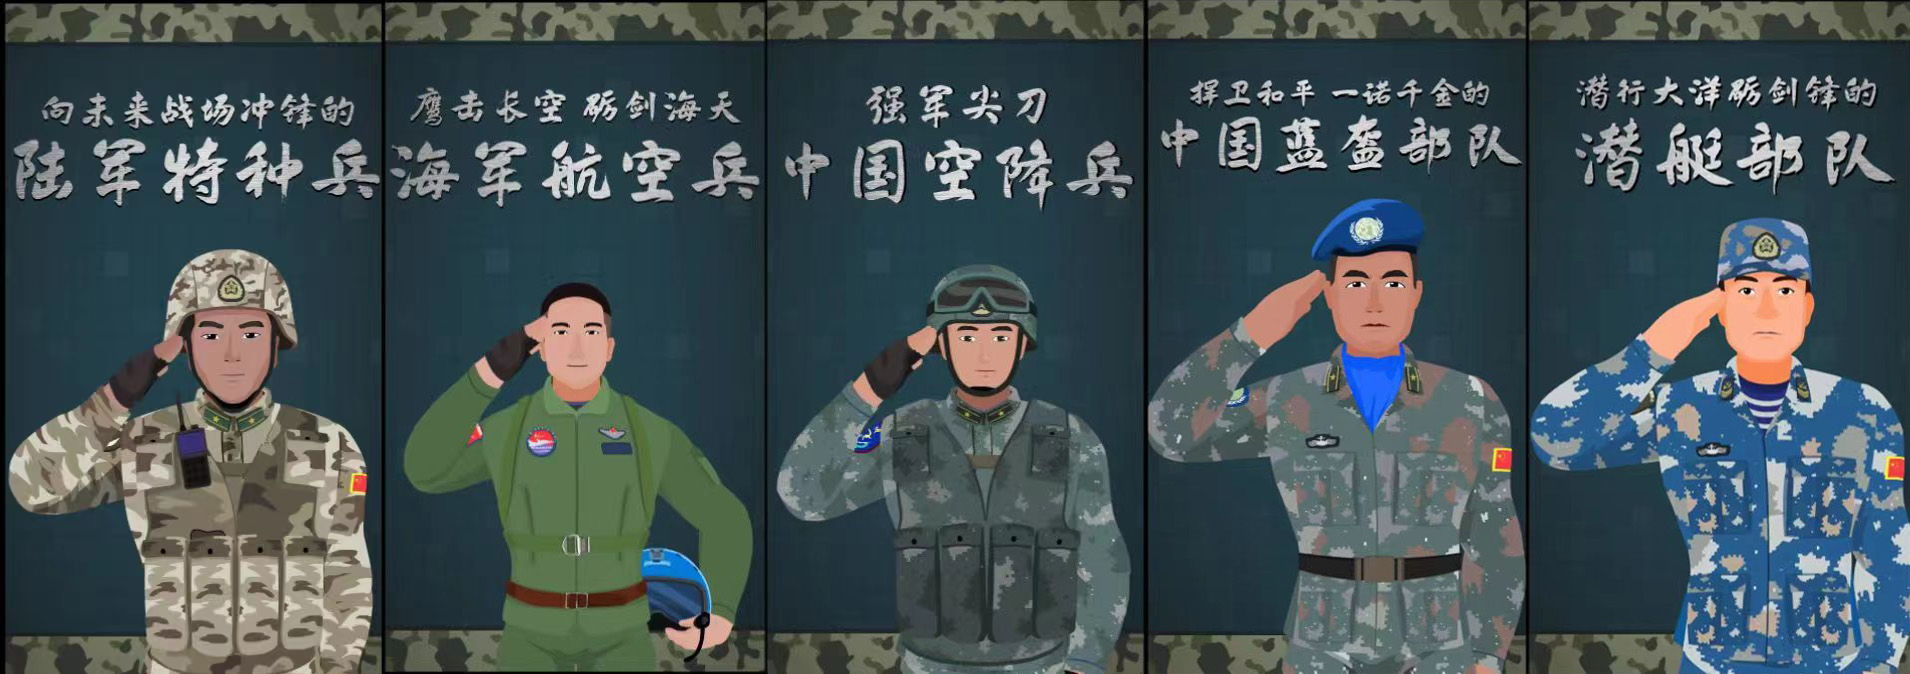 “新时代的兵”有多飒？光明网、科普中国推出国防教育系列动画